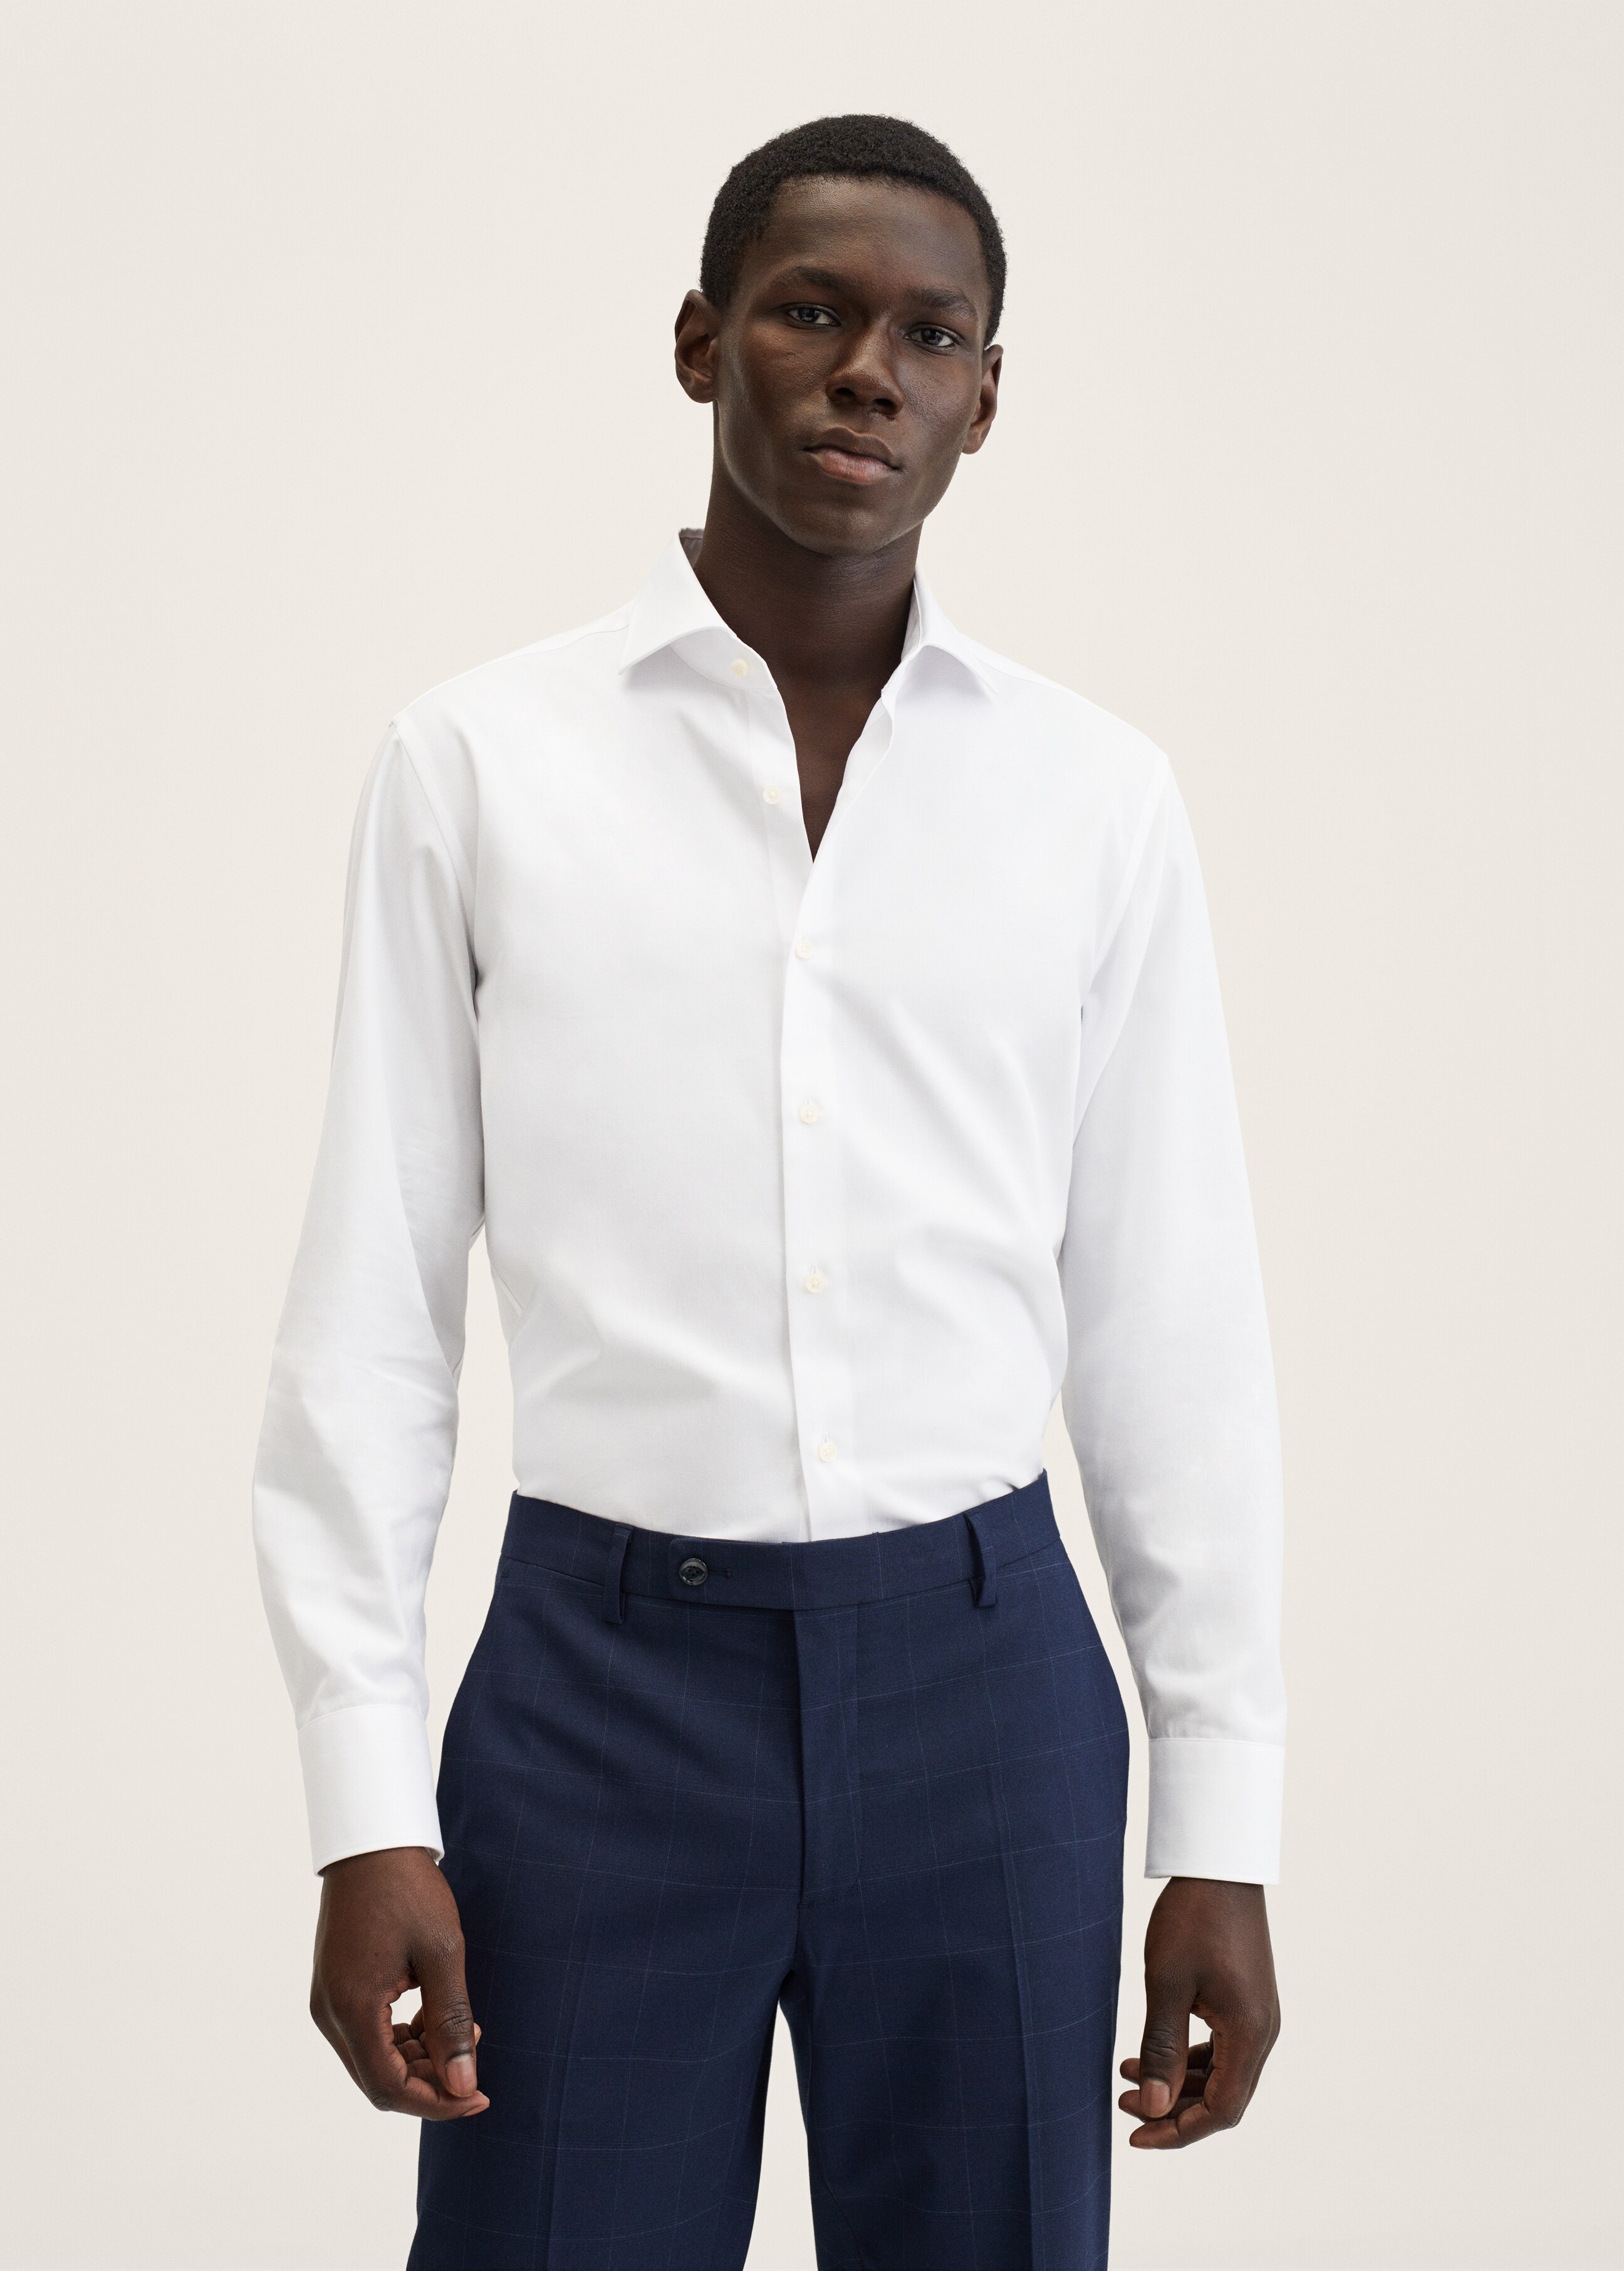 Slim fit cotton suit shirt - Medium plane